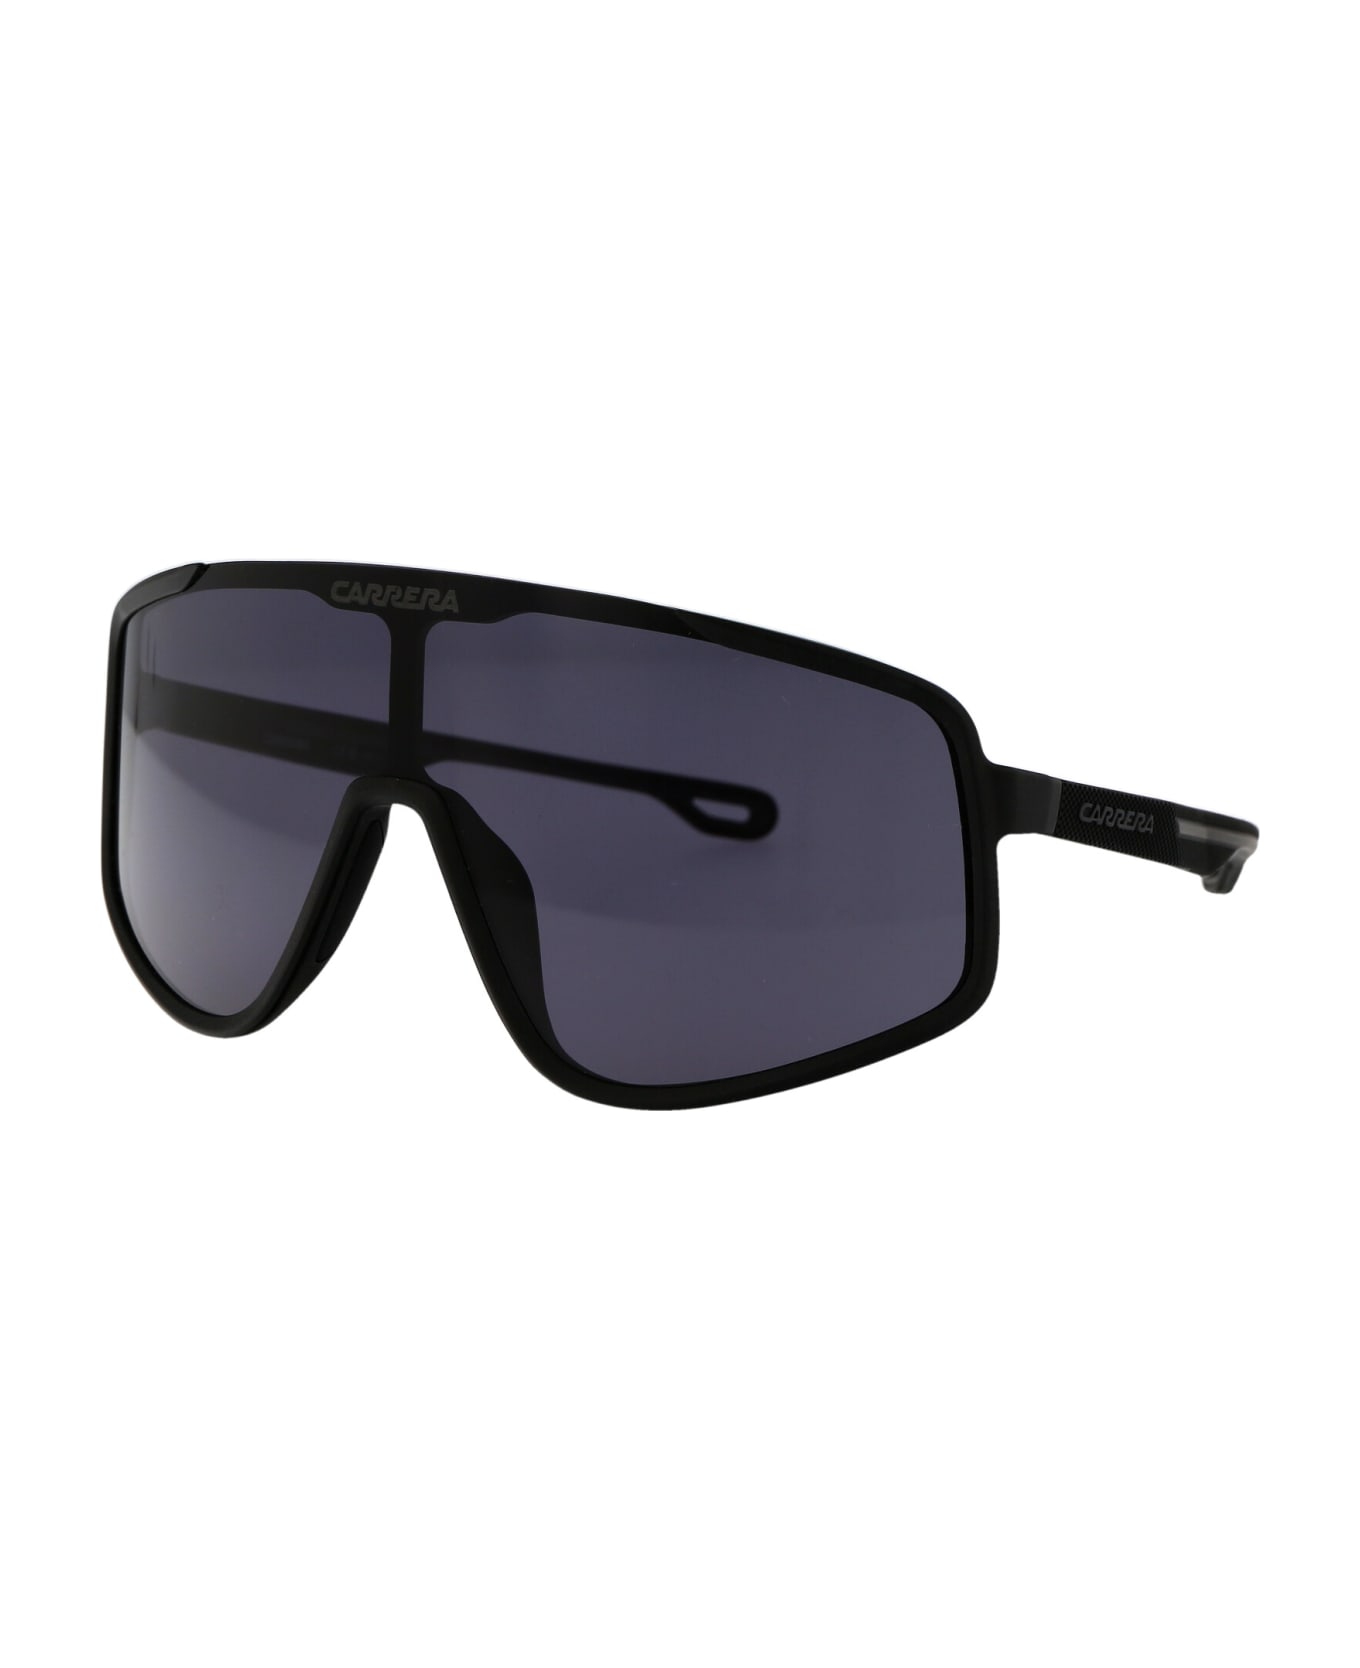 Carrera 4017/s Sunglasses - 003IR MTT BLACK